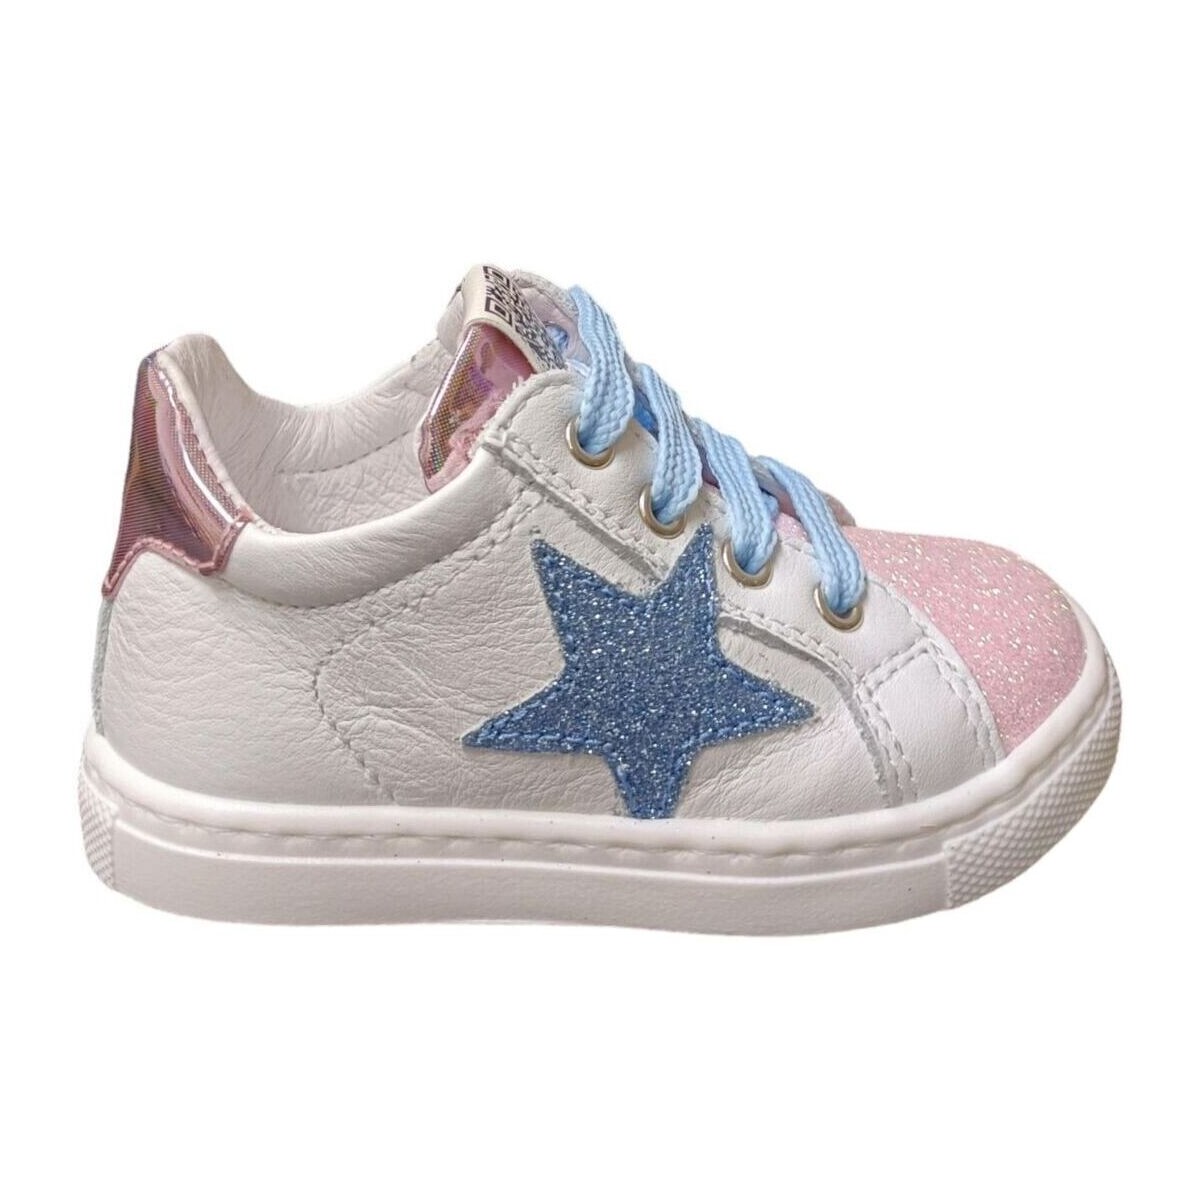 Sapatos Criança Sapatilhas Ciao STAR BABY Multicolor